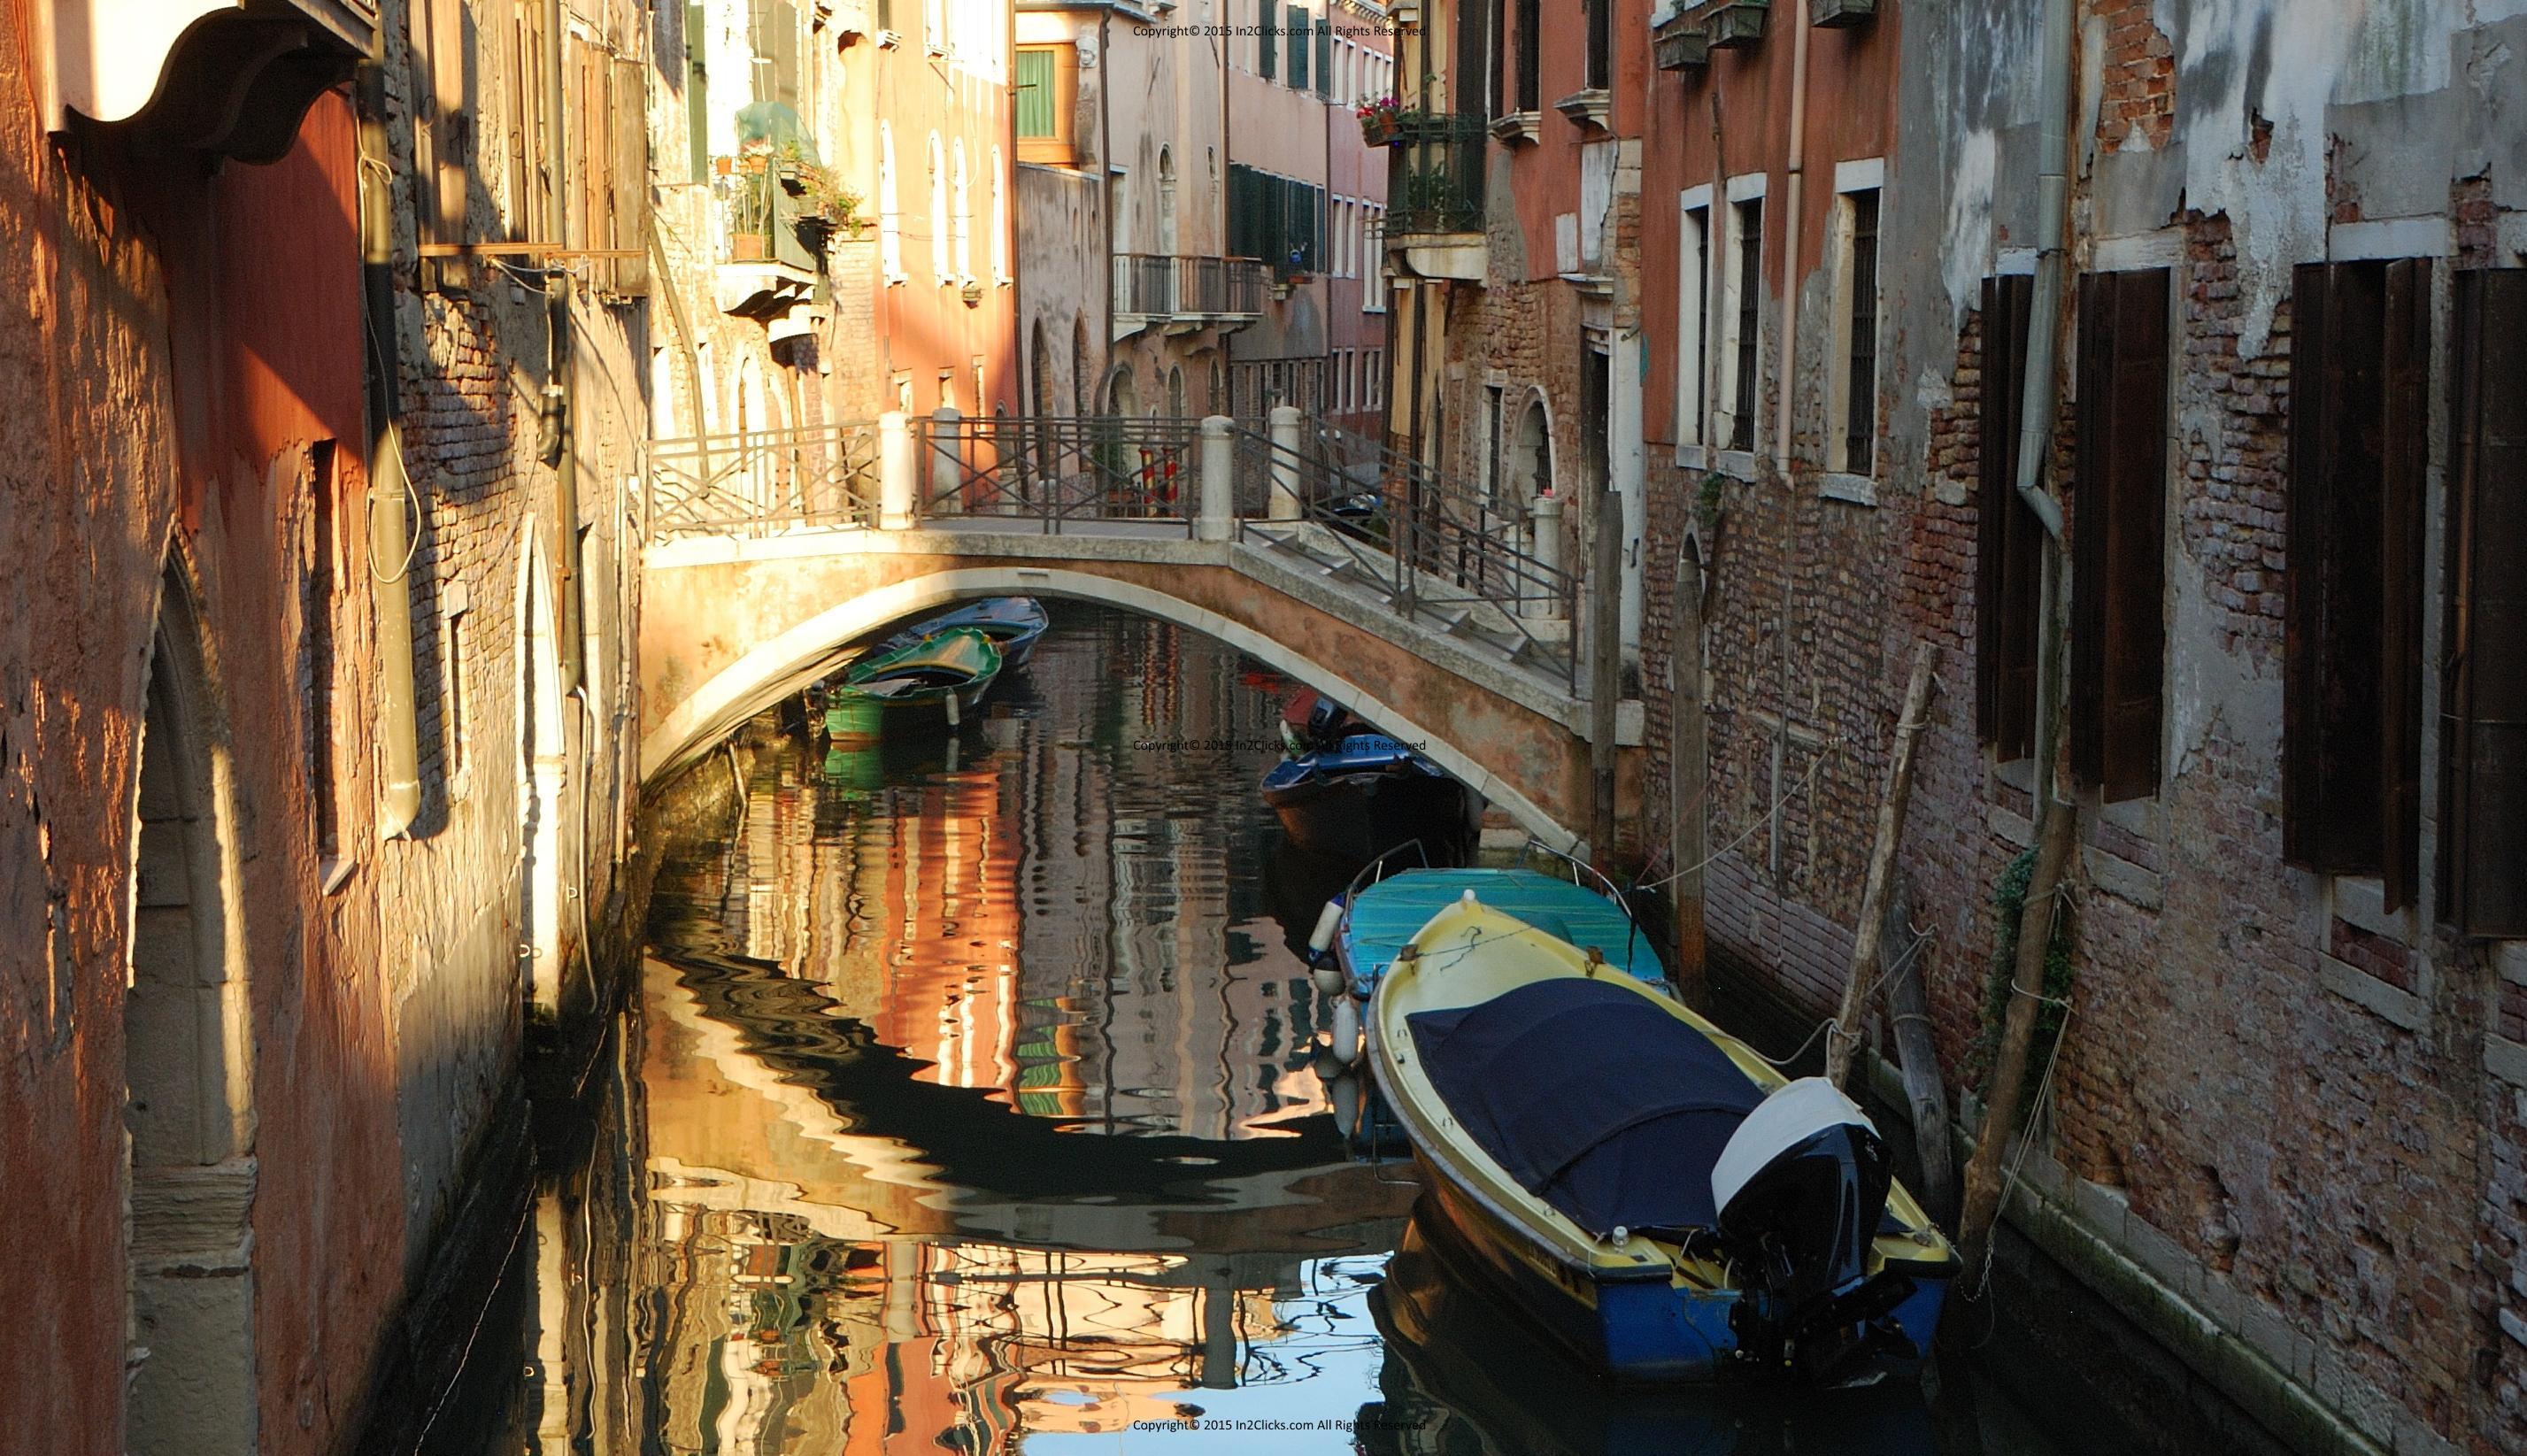 Mark's Venice